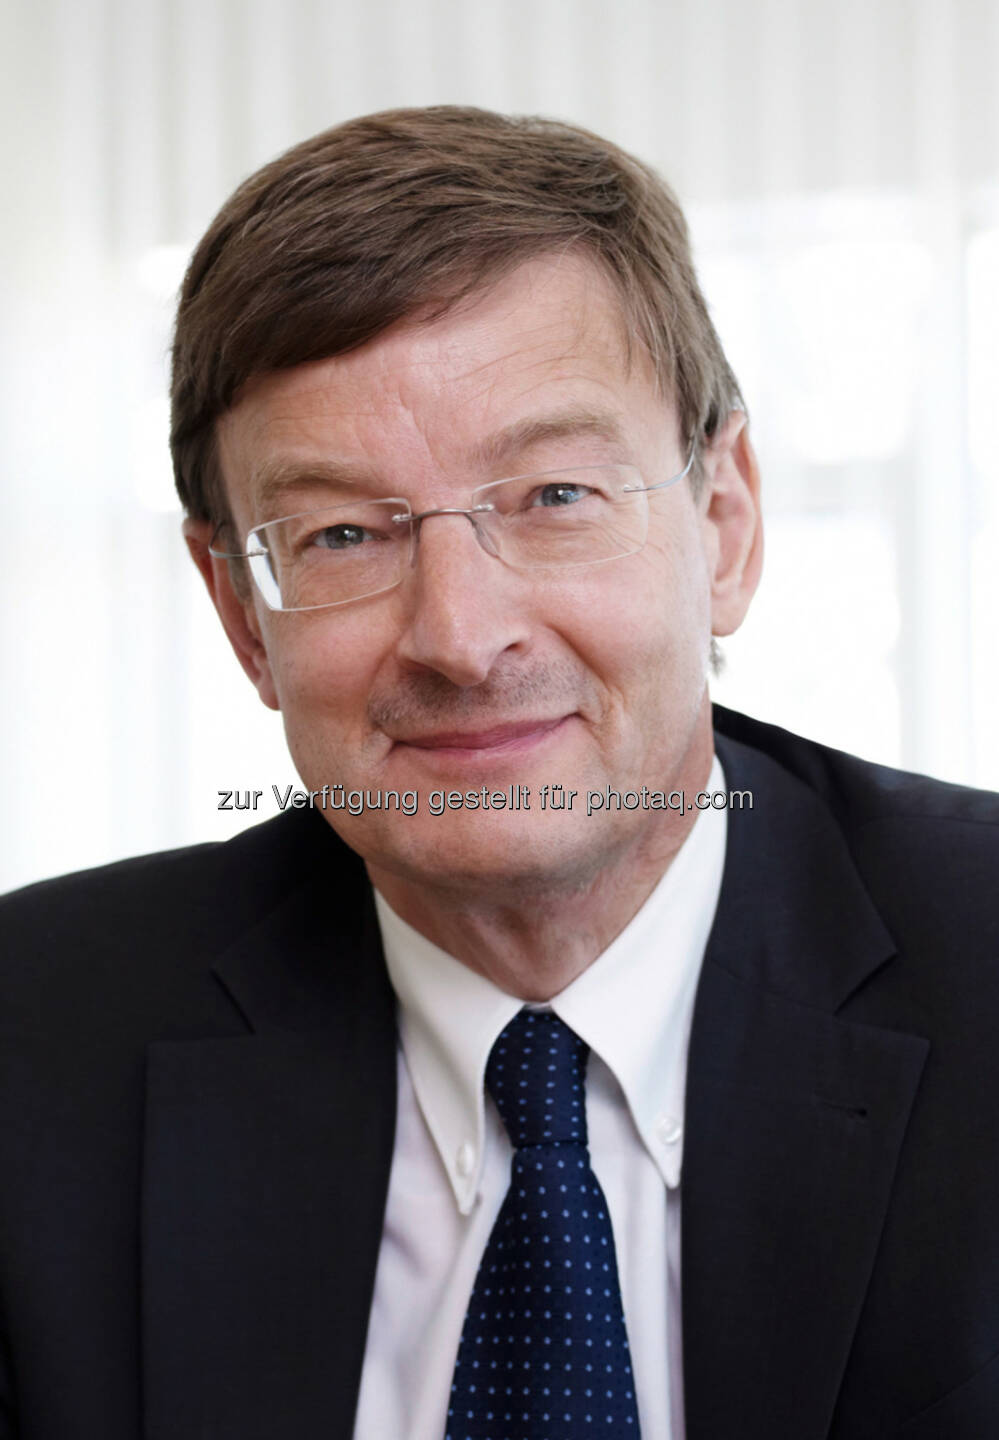 Otmar D. Wiestler zum Mitglied des Aufsichtsrats der Bayer AG bestellt